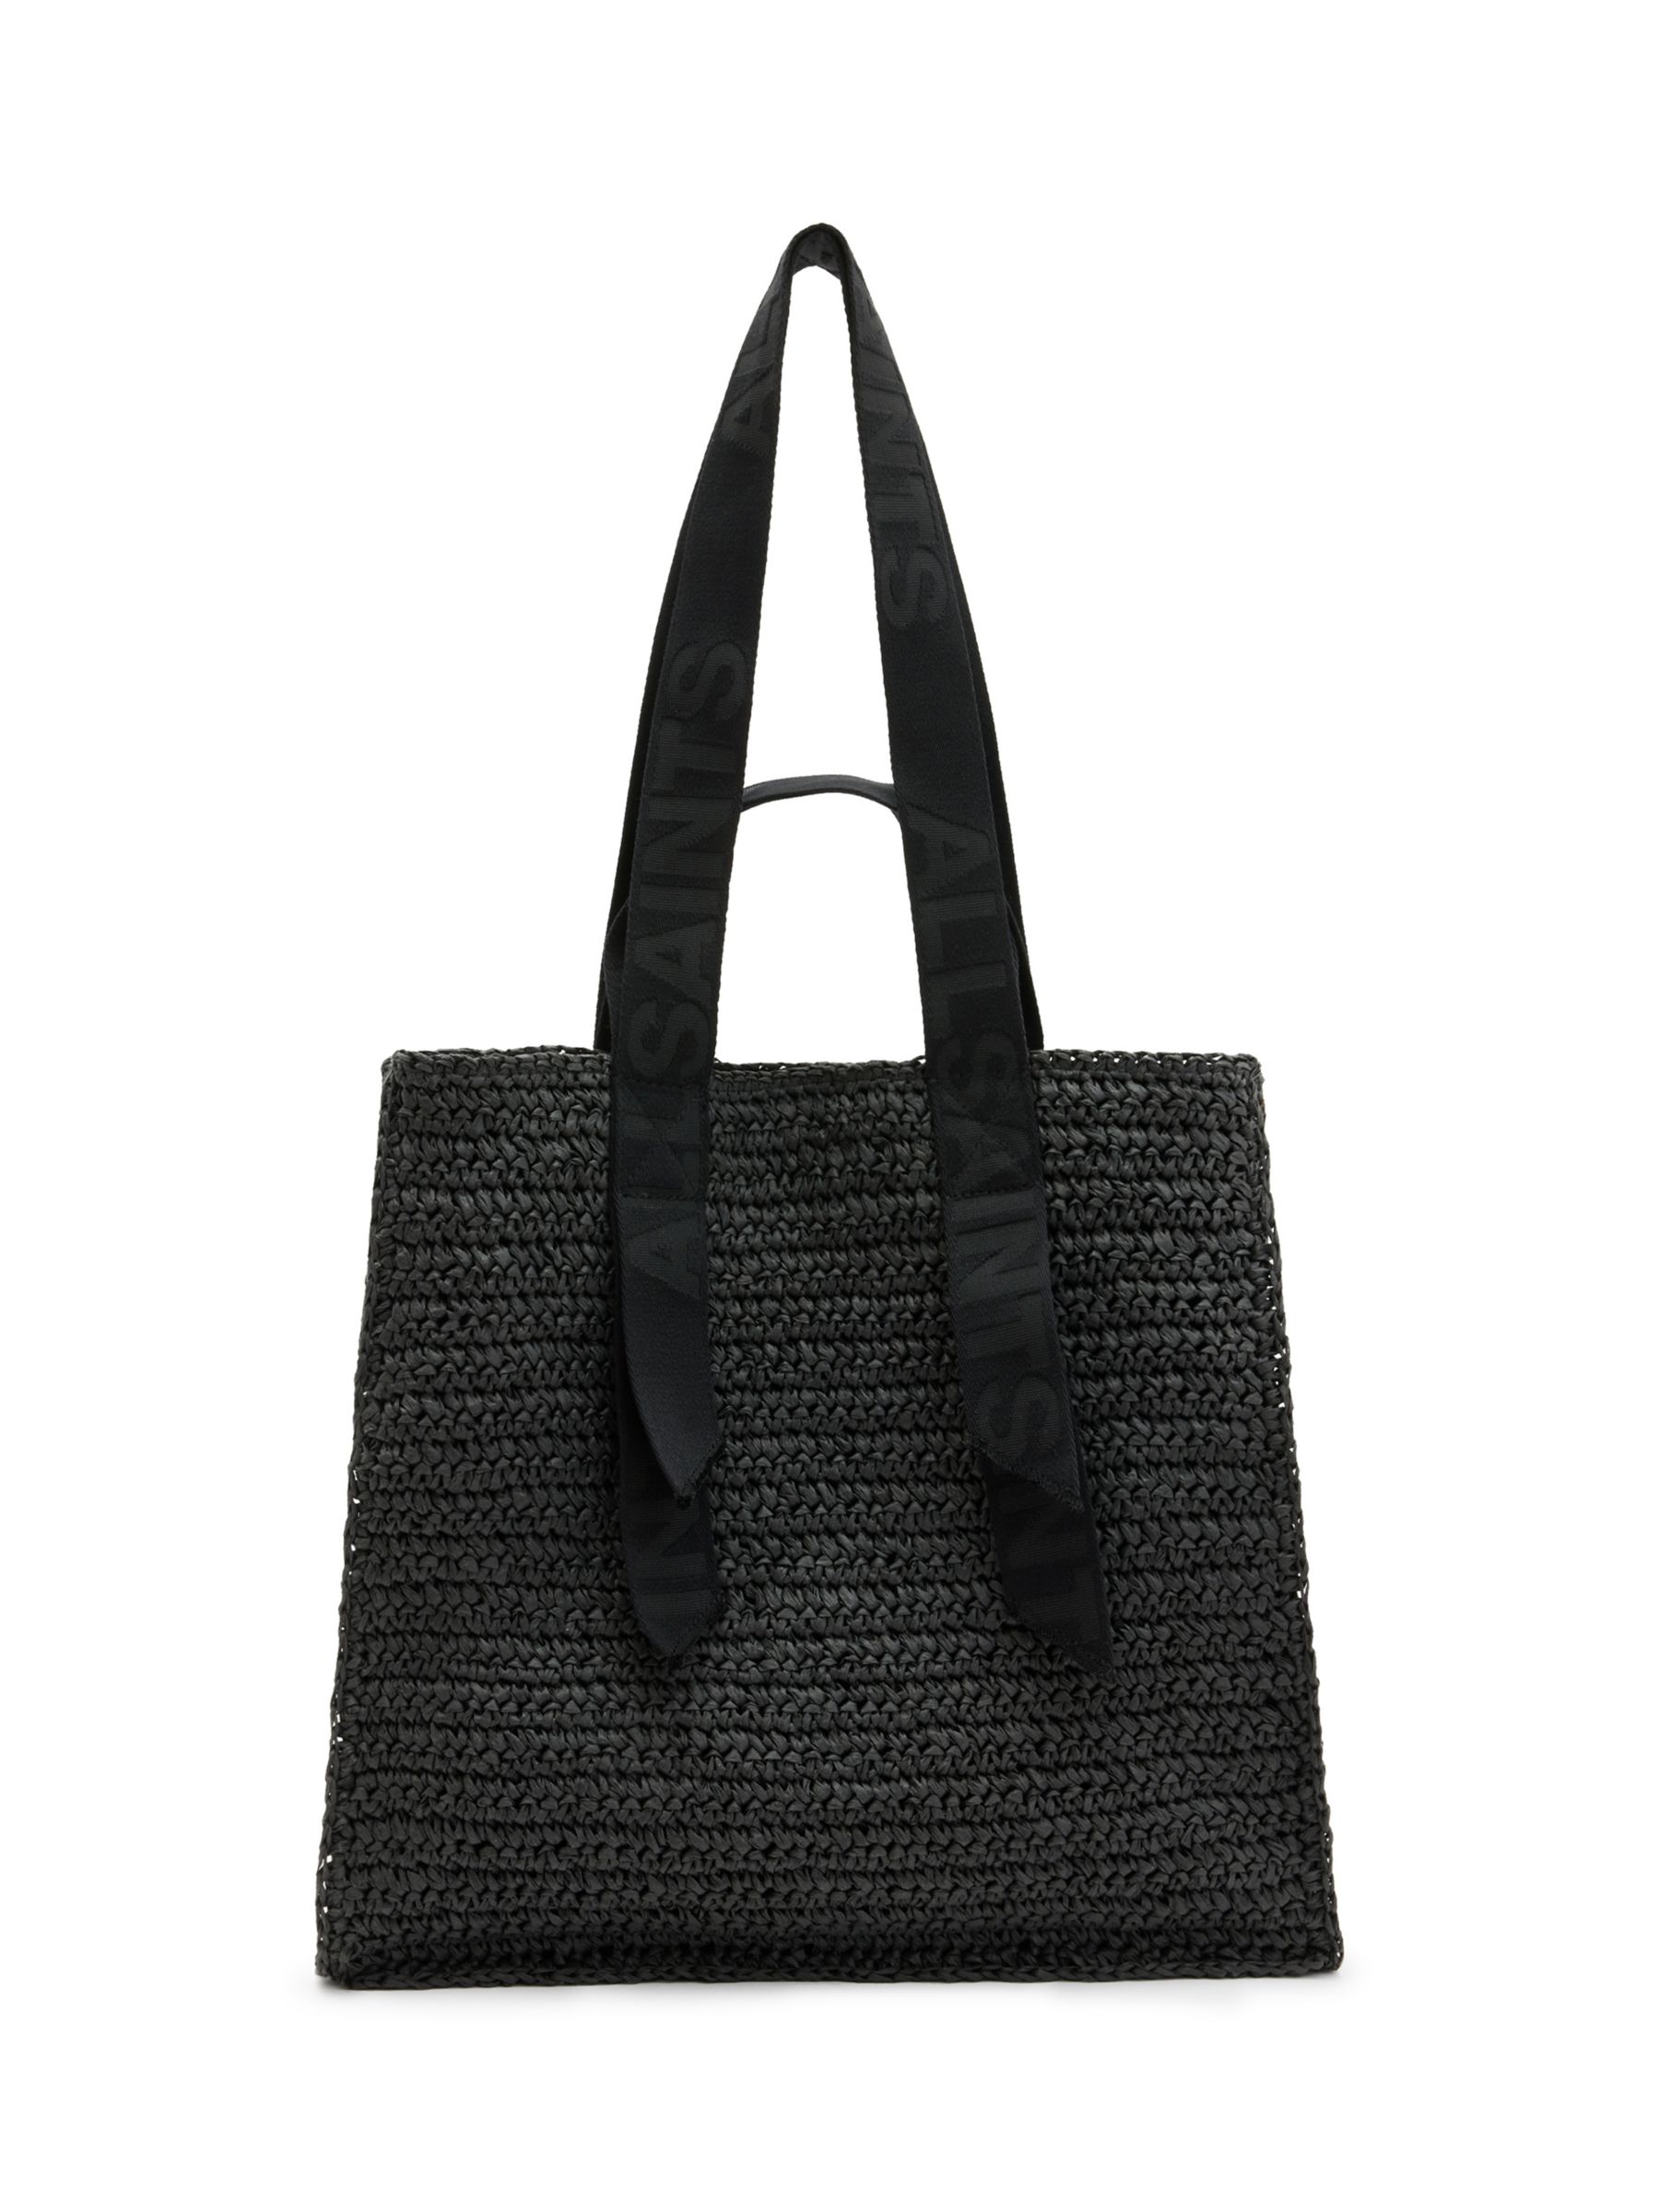 Buy AllSaints Lullah Tote Bag Online at johnlewis.com